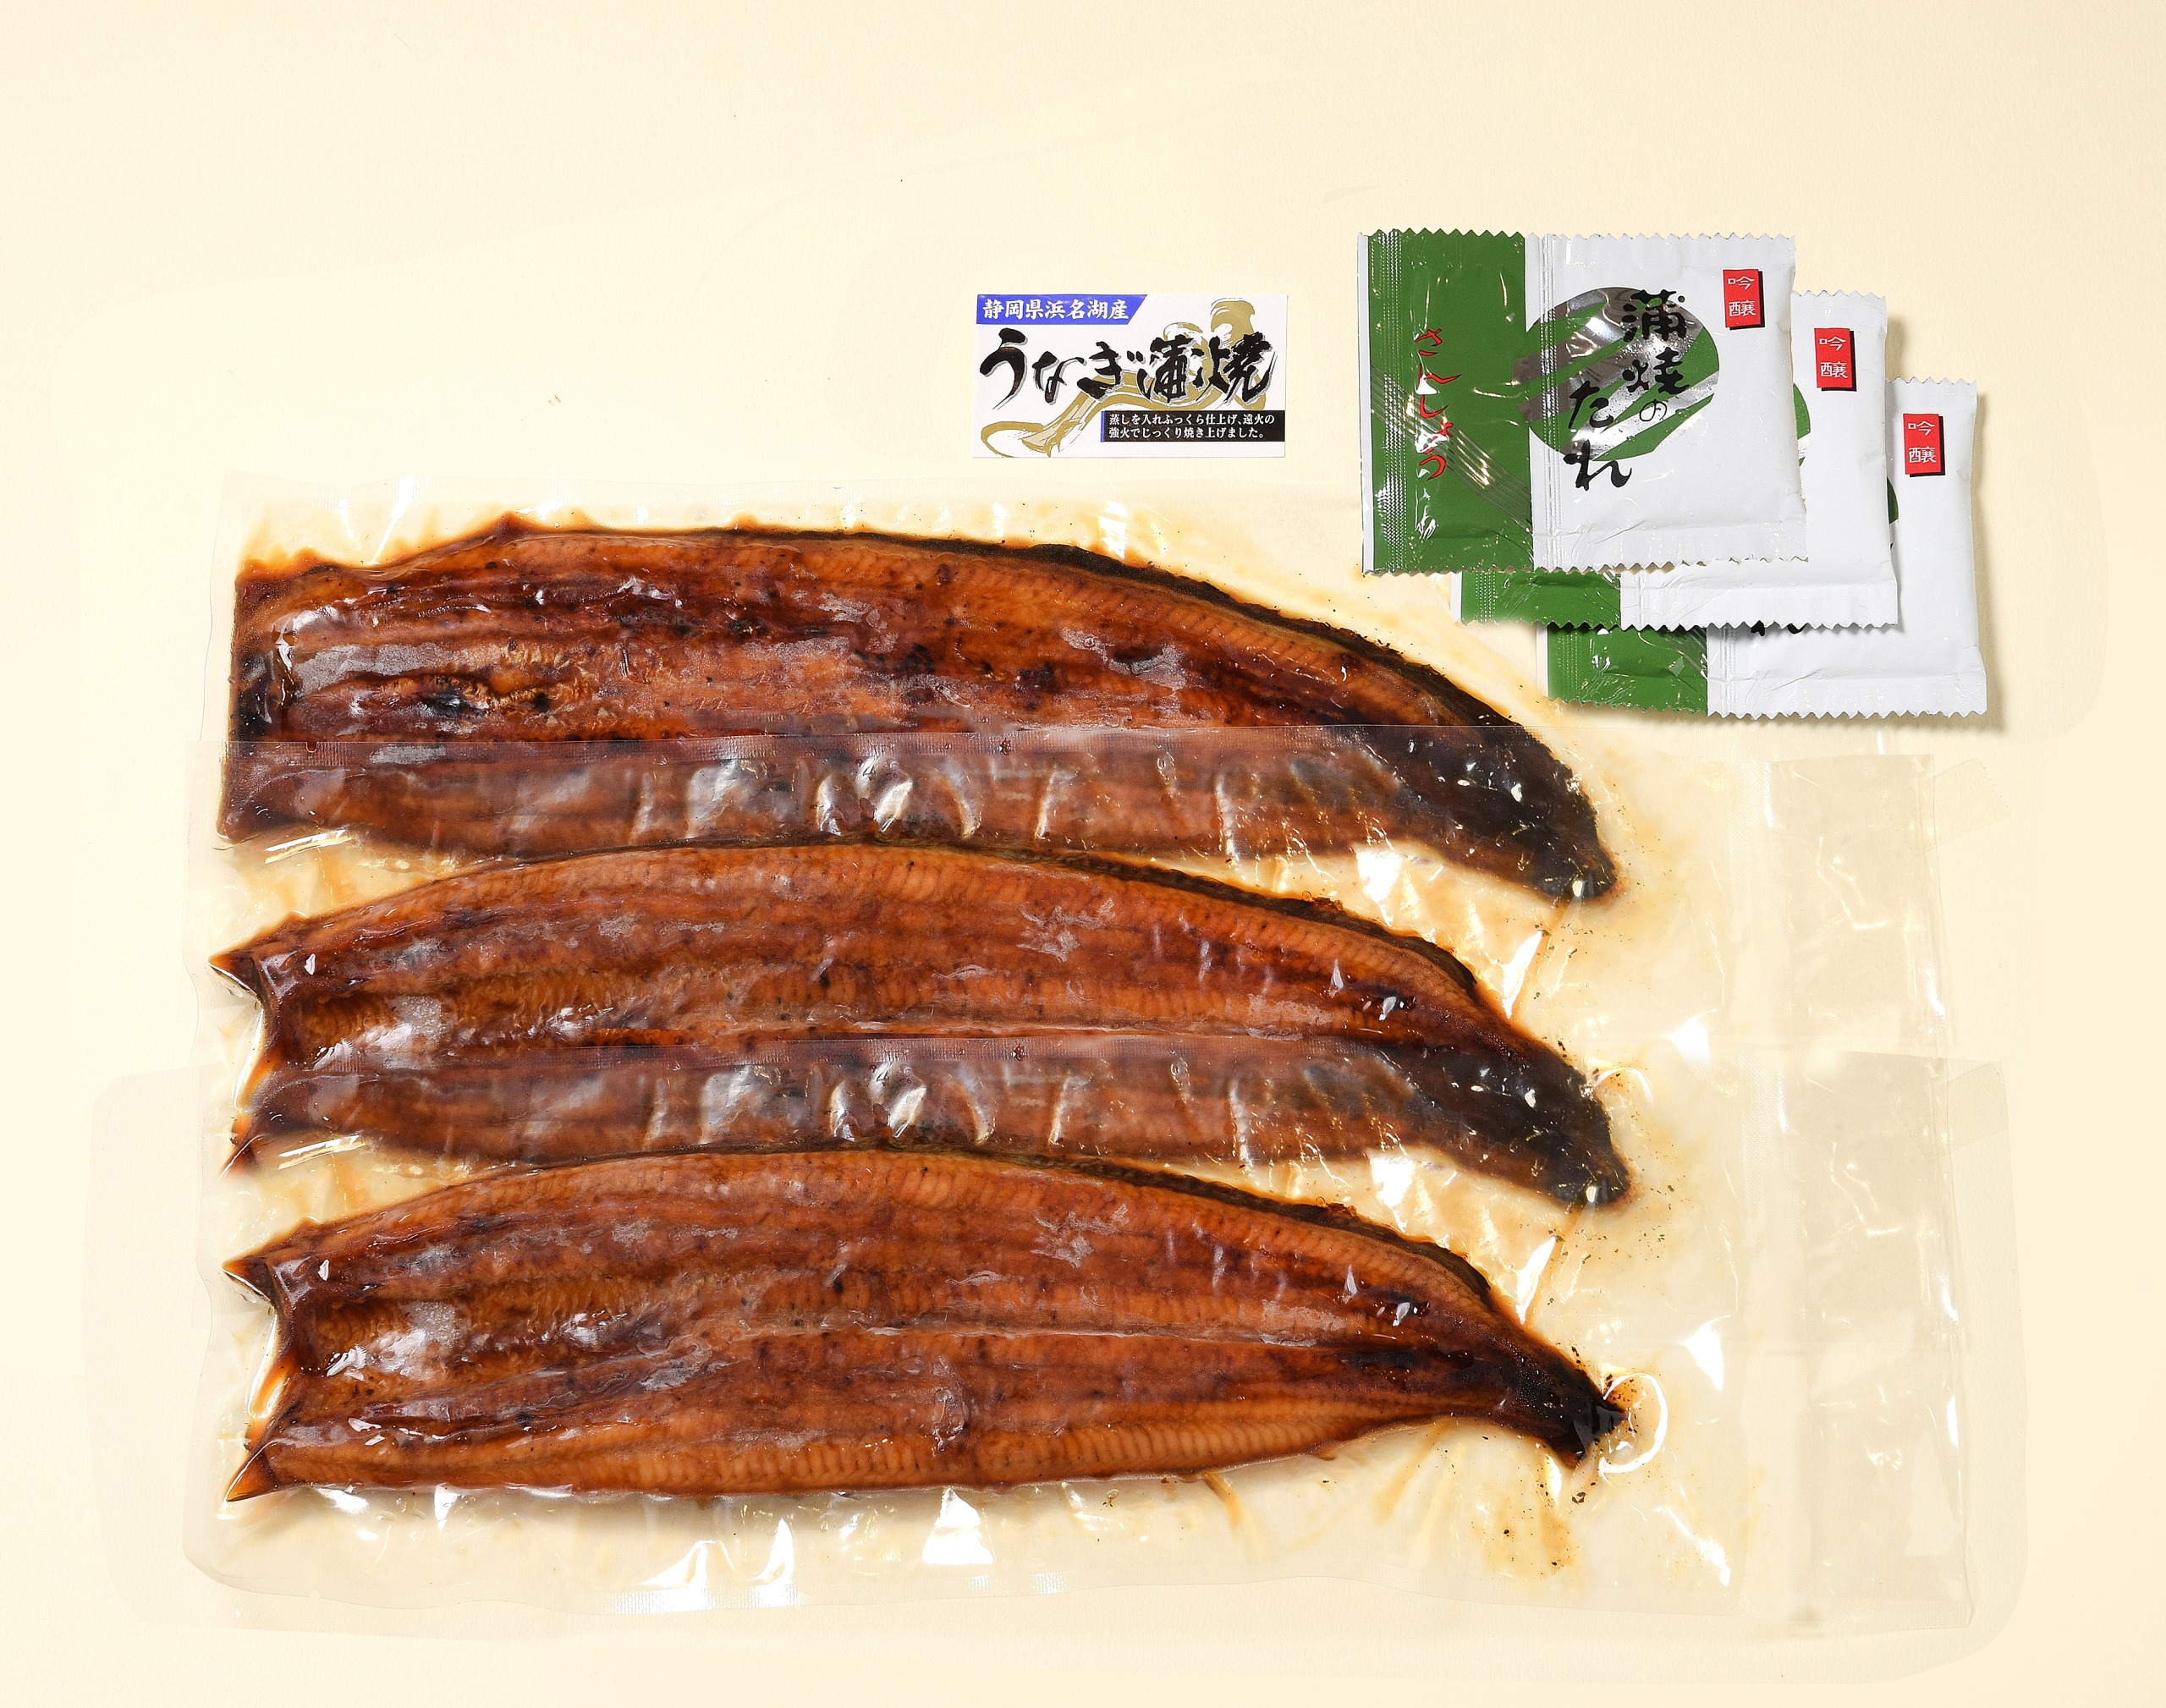 静岡県で採捕されたシラスを原料に、静岡県浜名湖で養殖されたうなぎを使用しております。（1尾約180g～200g）